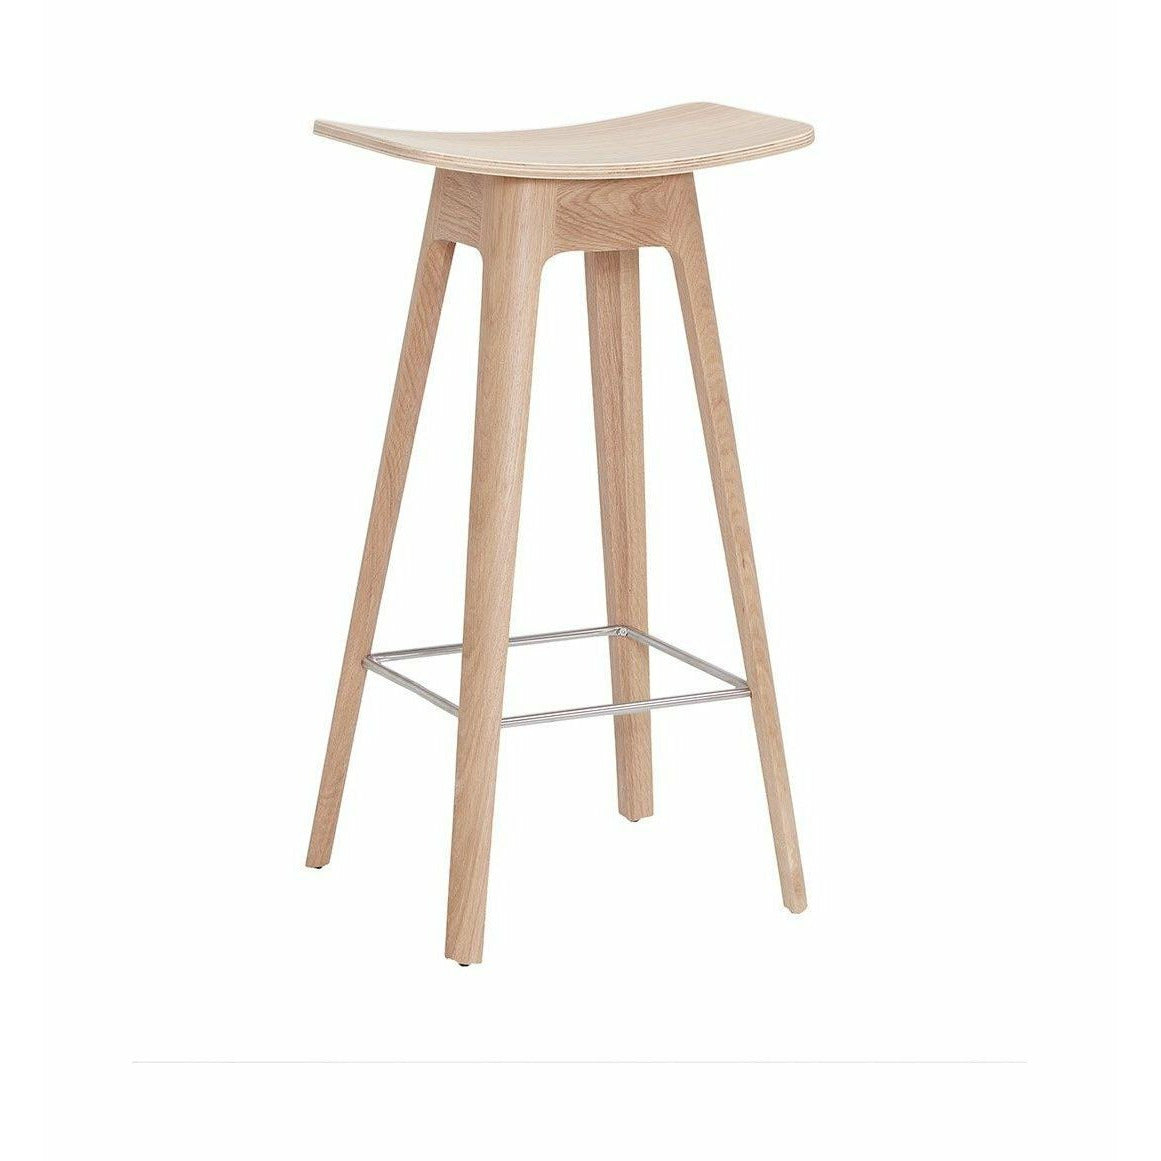 Andersen Furniture HC1 barstol i ek, h 67 cm